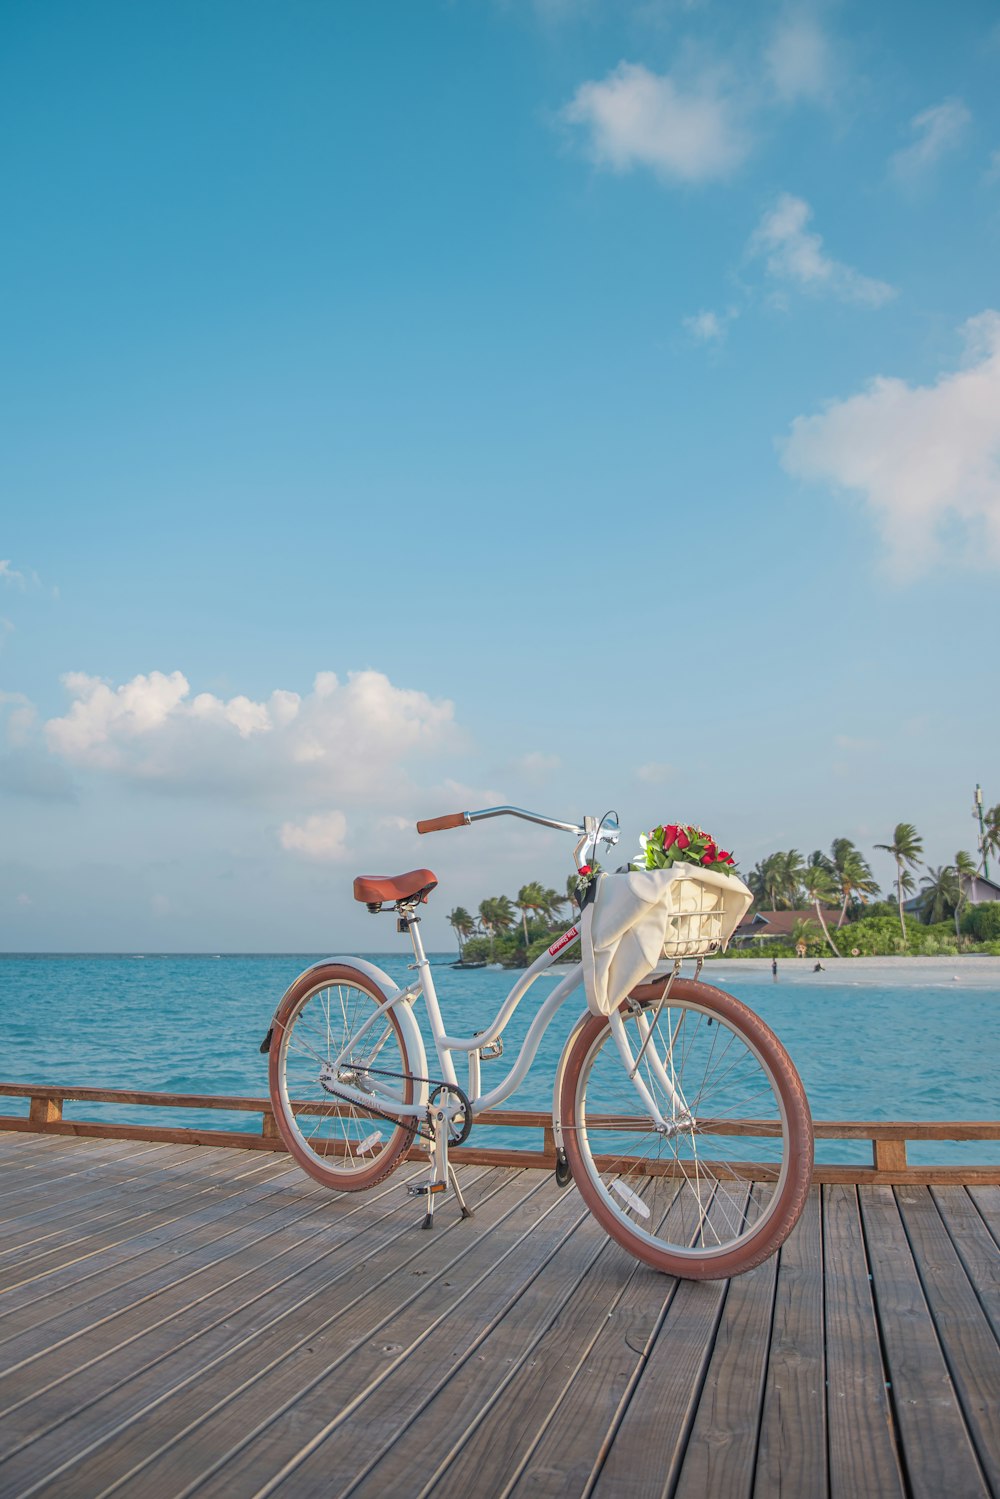 bicicletta bianca sul molo di legno marrone durante il giorno